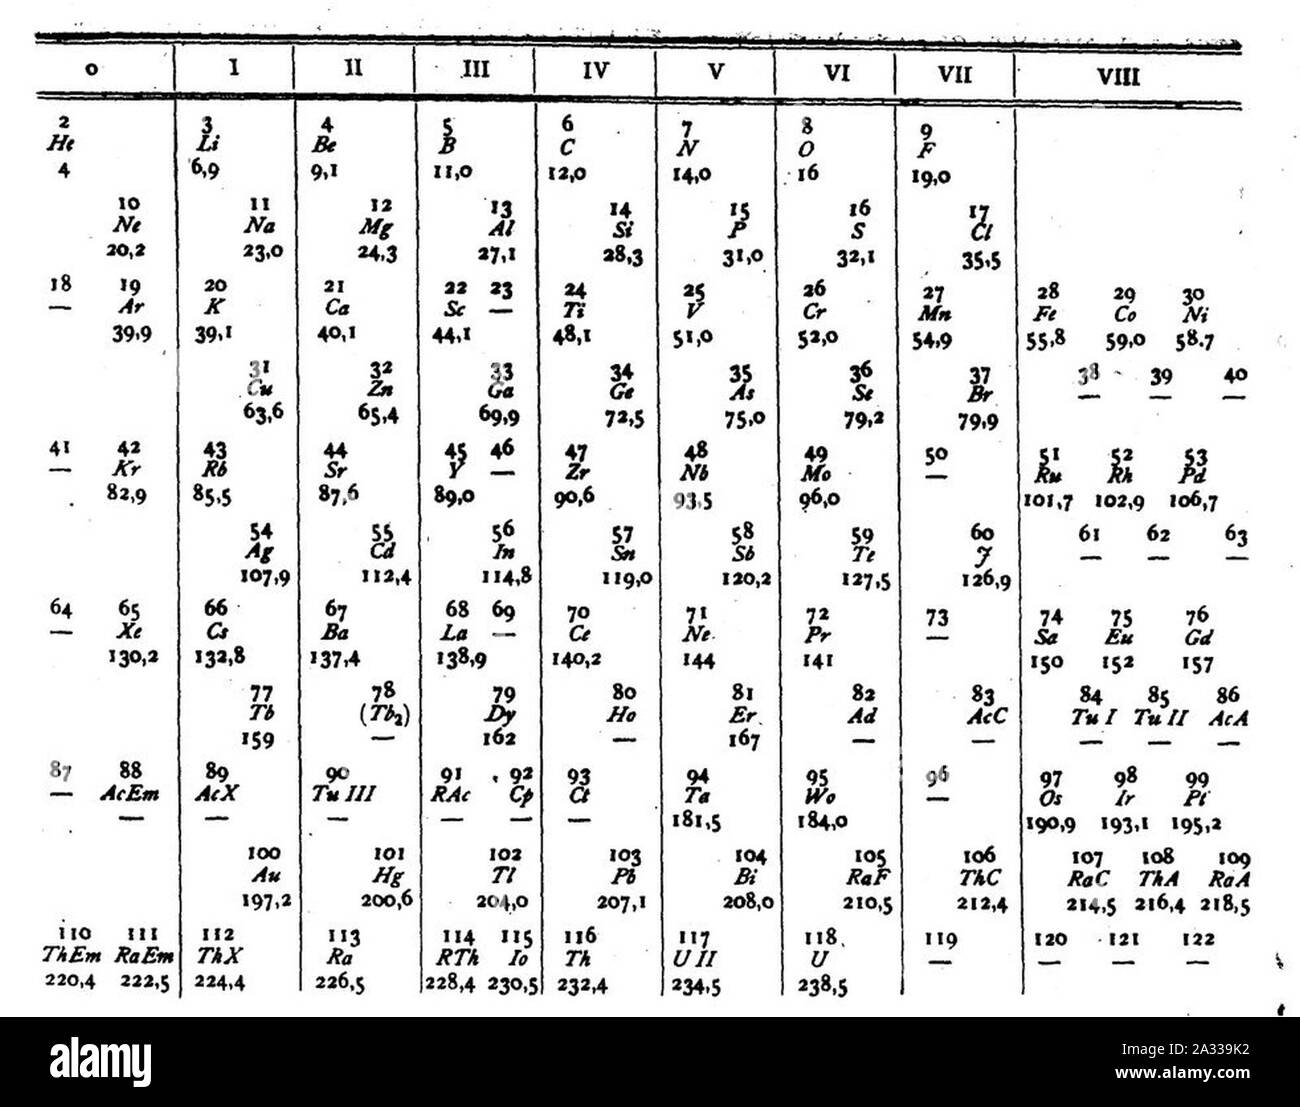 Extended periodic table van den Broek. Stock Photo